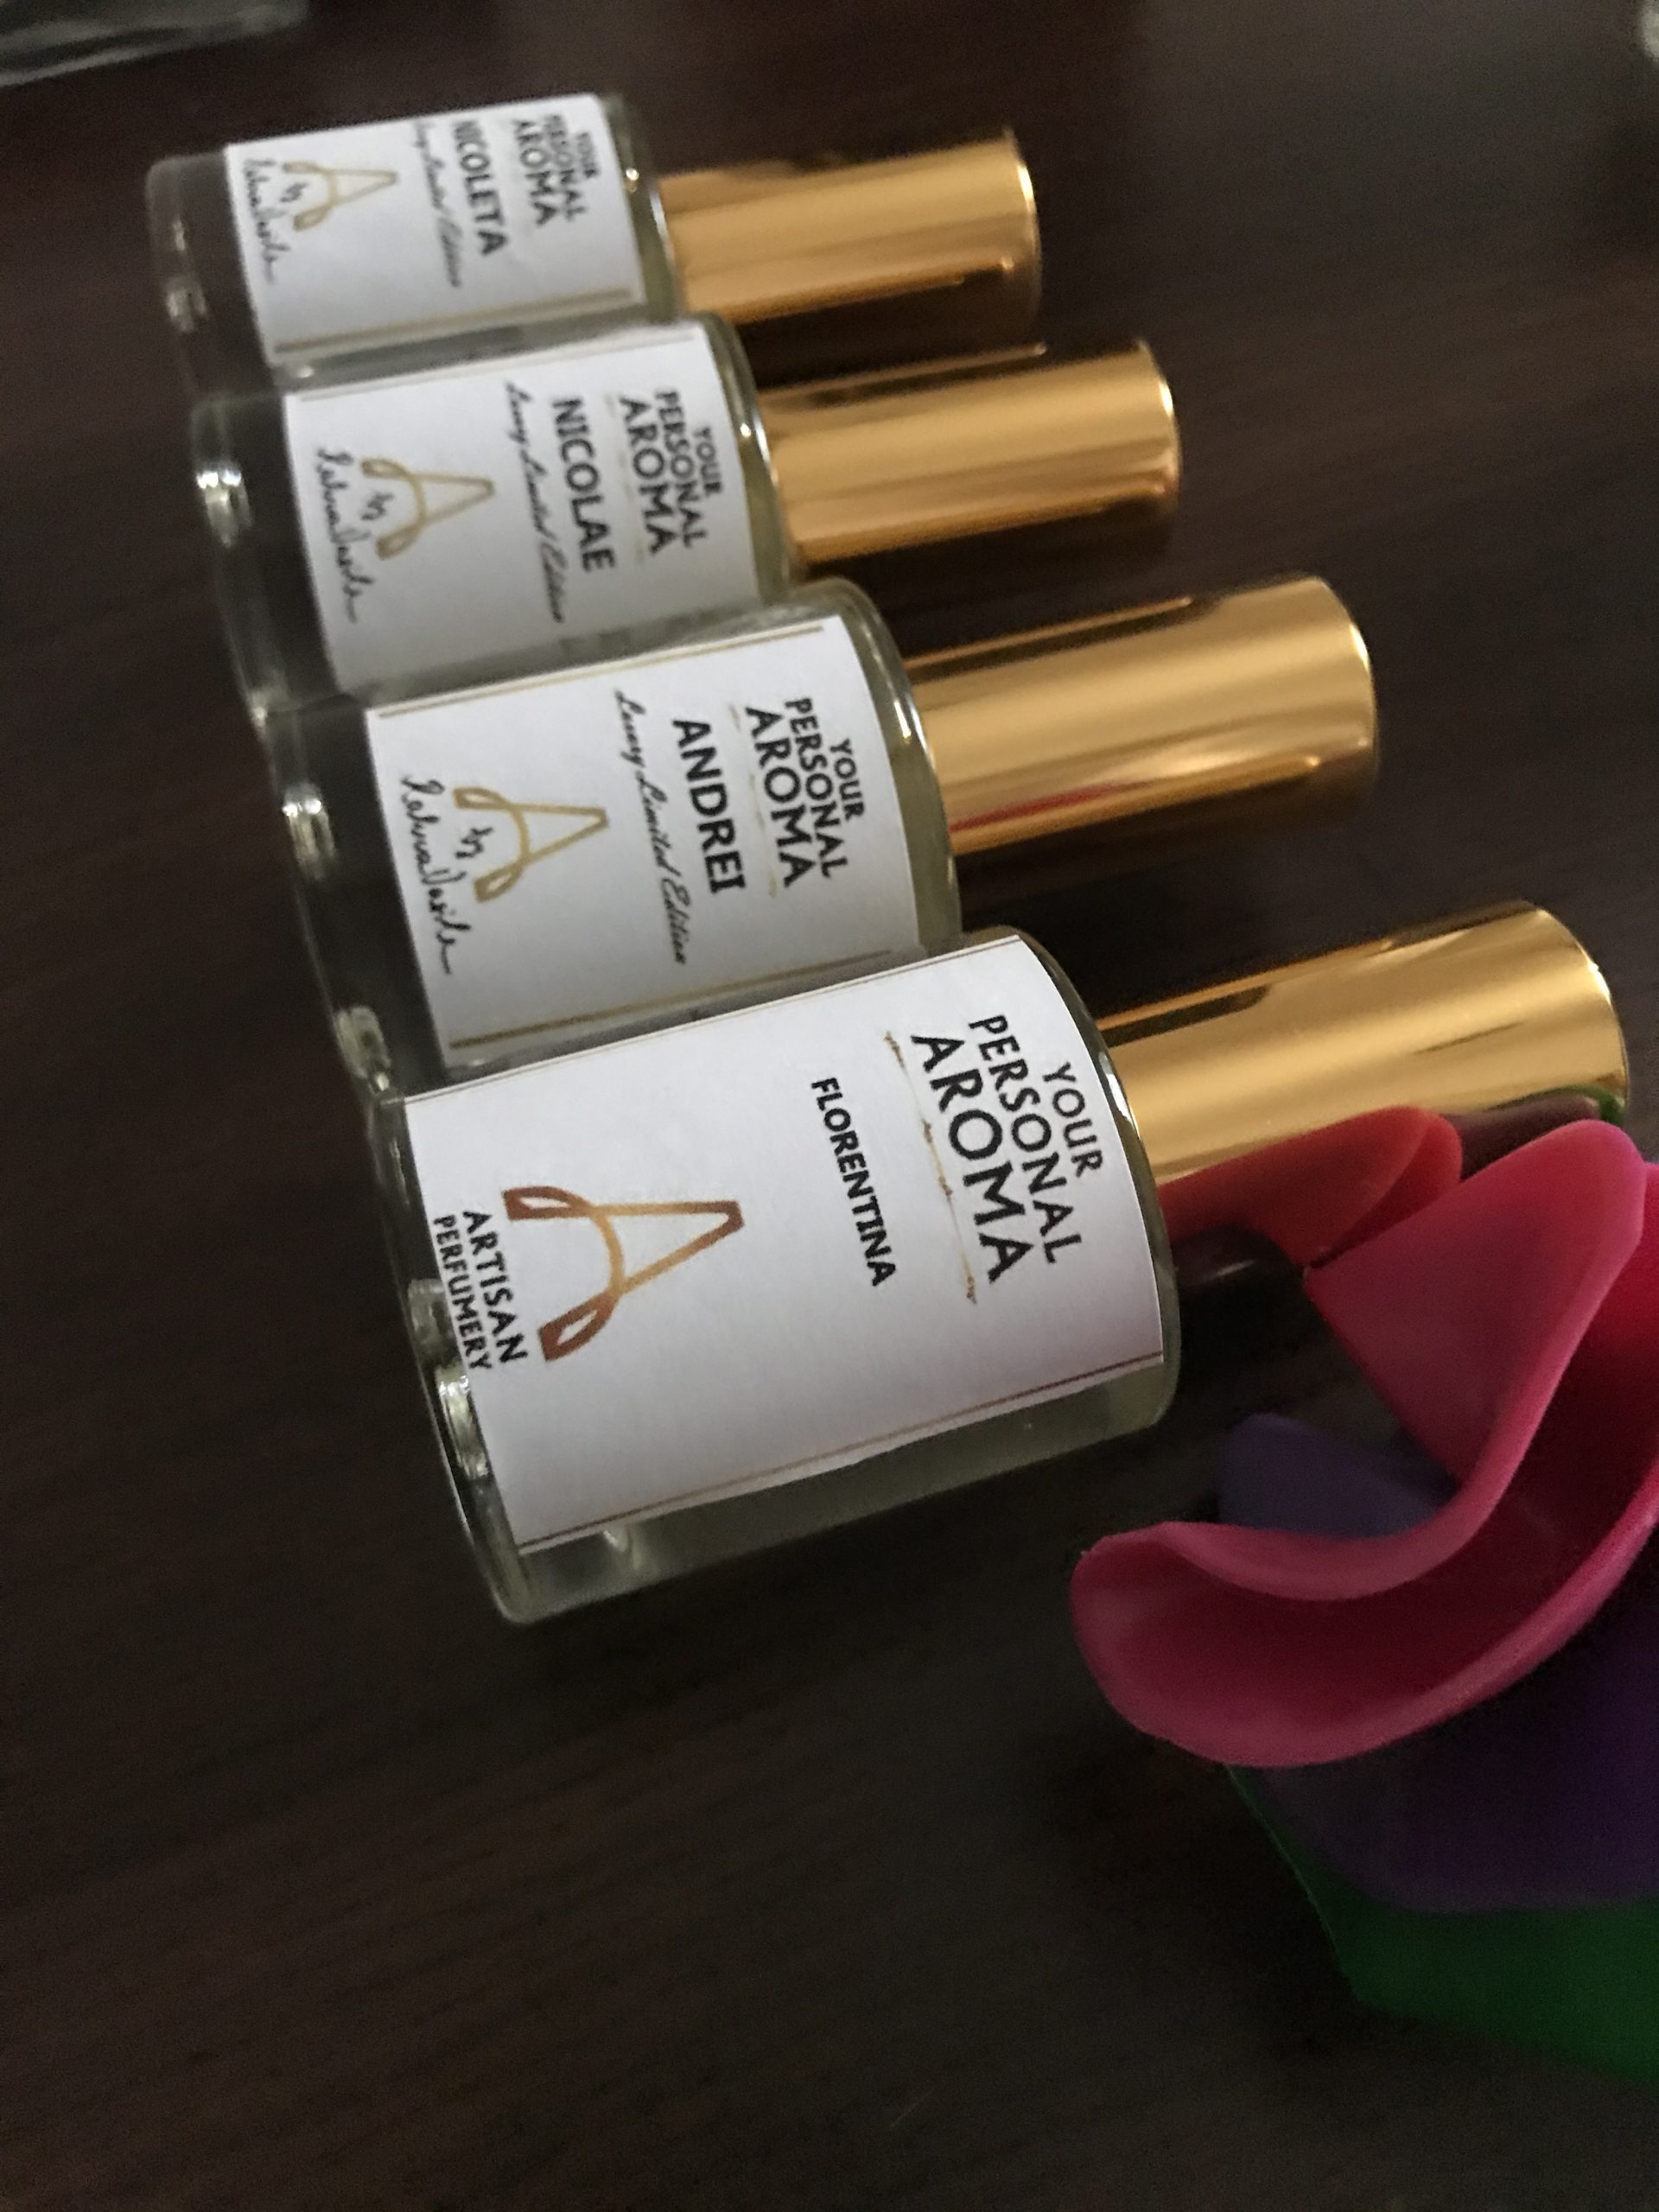 YPA Artisan Parfums